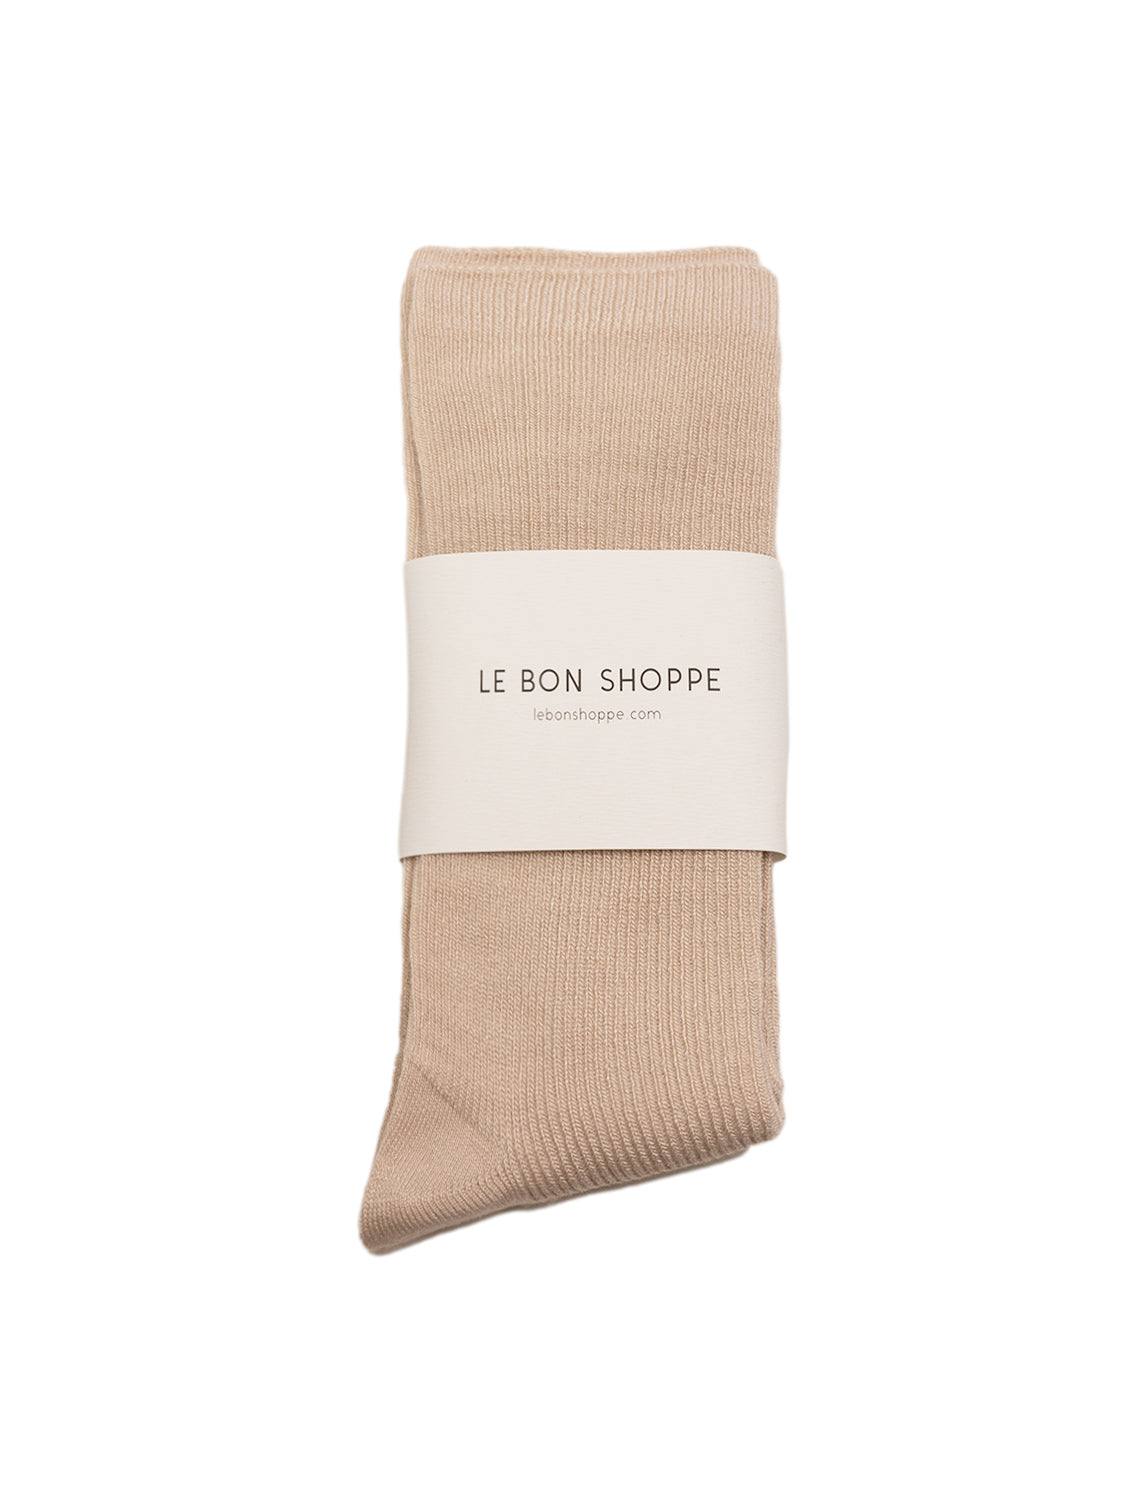 Jennifer Leigh Trouser Socks  MidPines Hosiery Sock Outlet